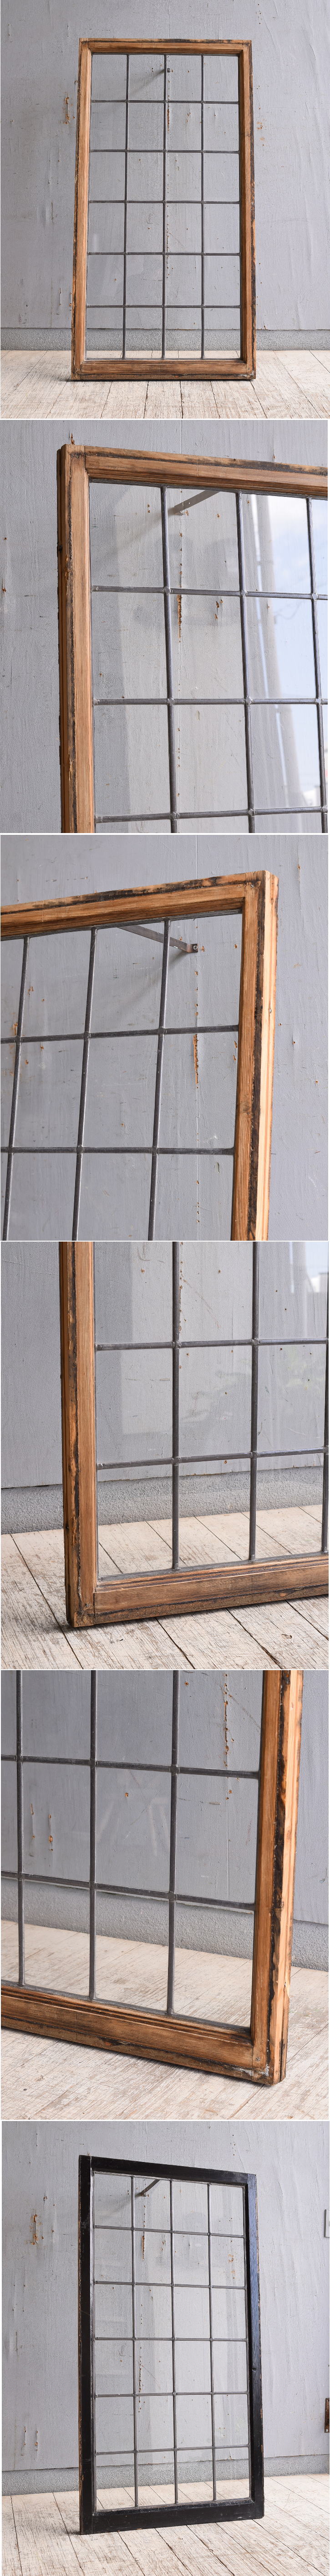 イギリス アンティーク 窓 無色透明 10099